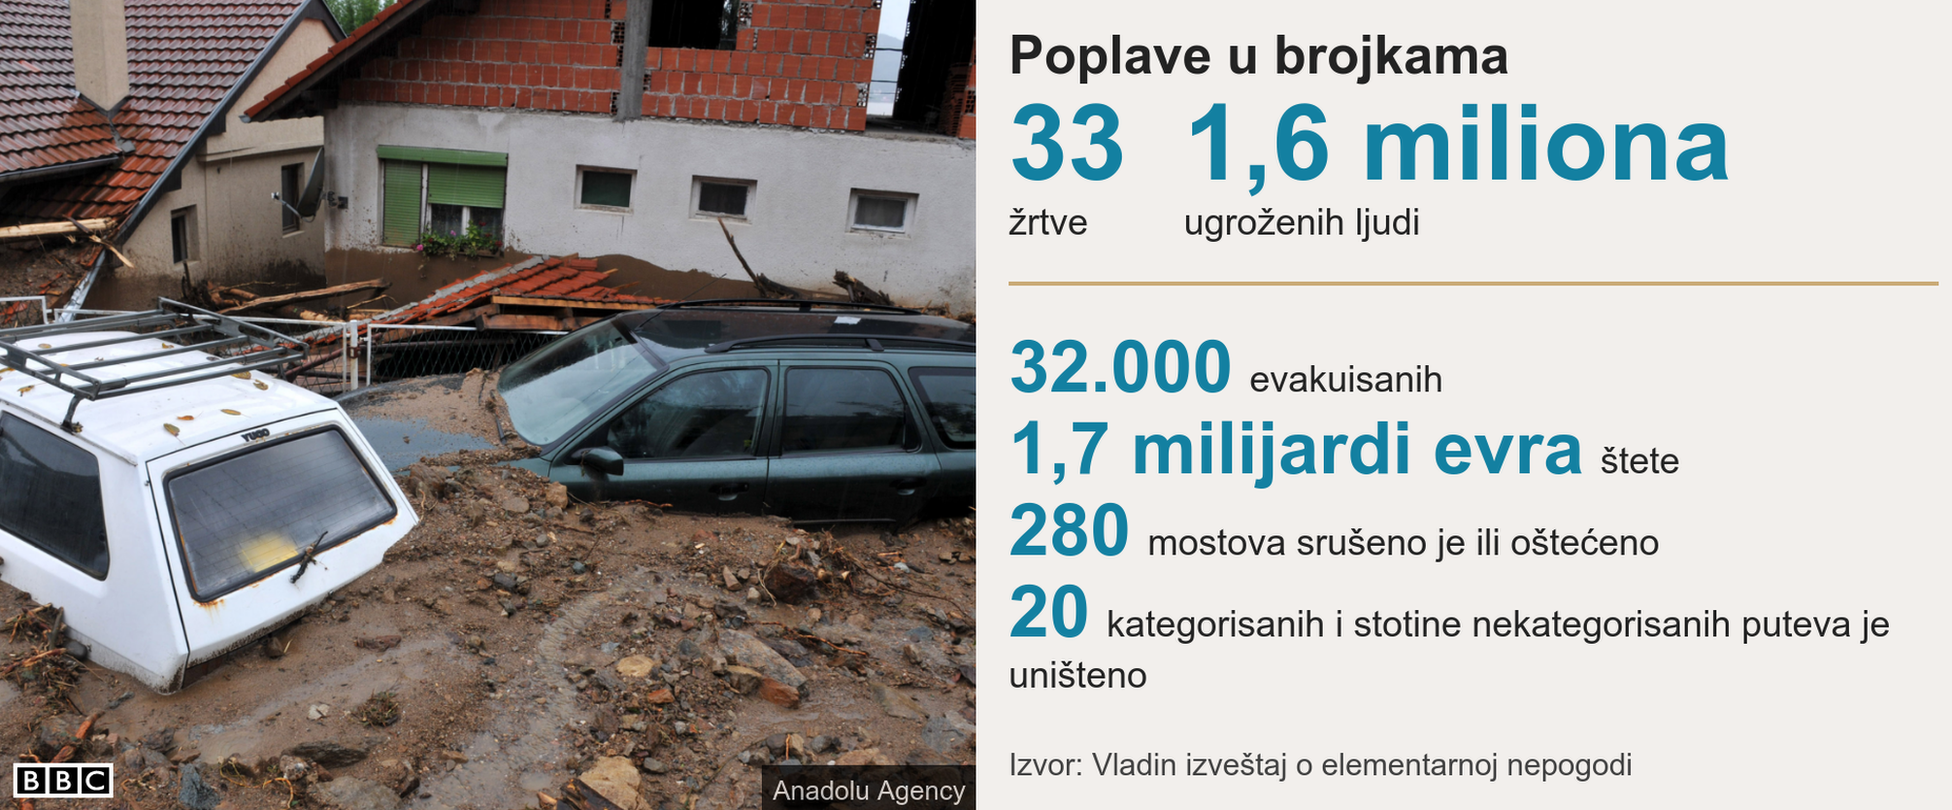 poplave u Srbiji 2014.